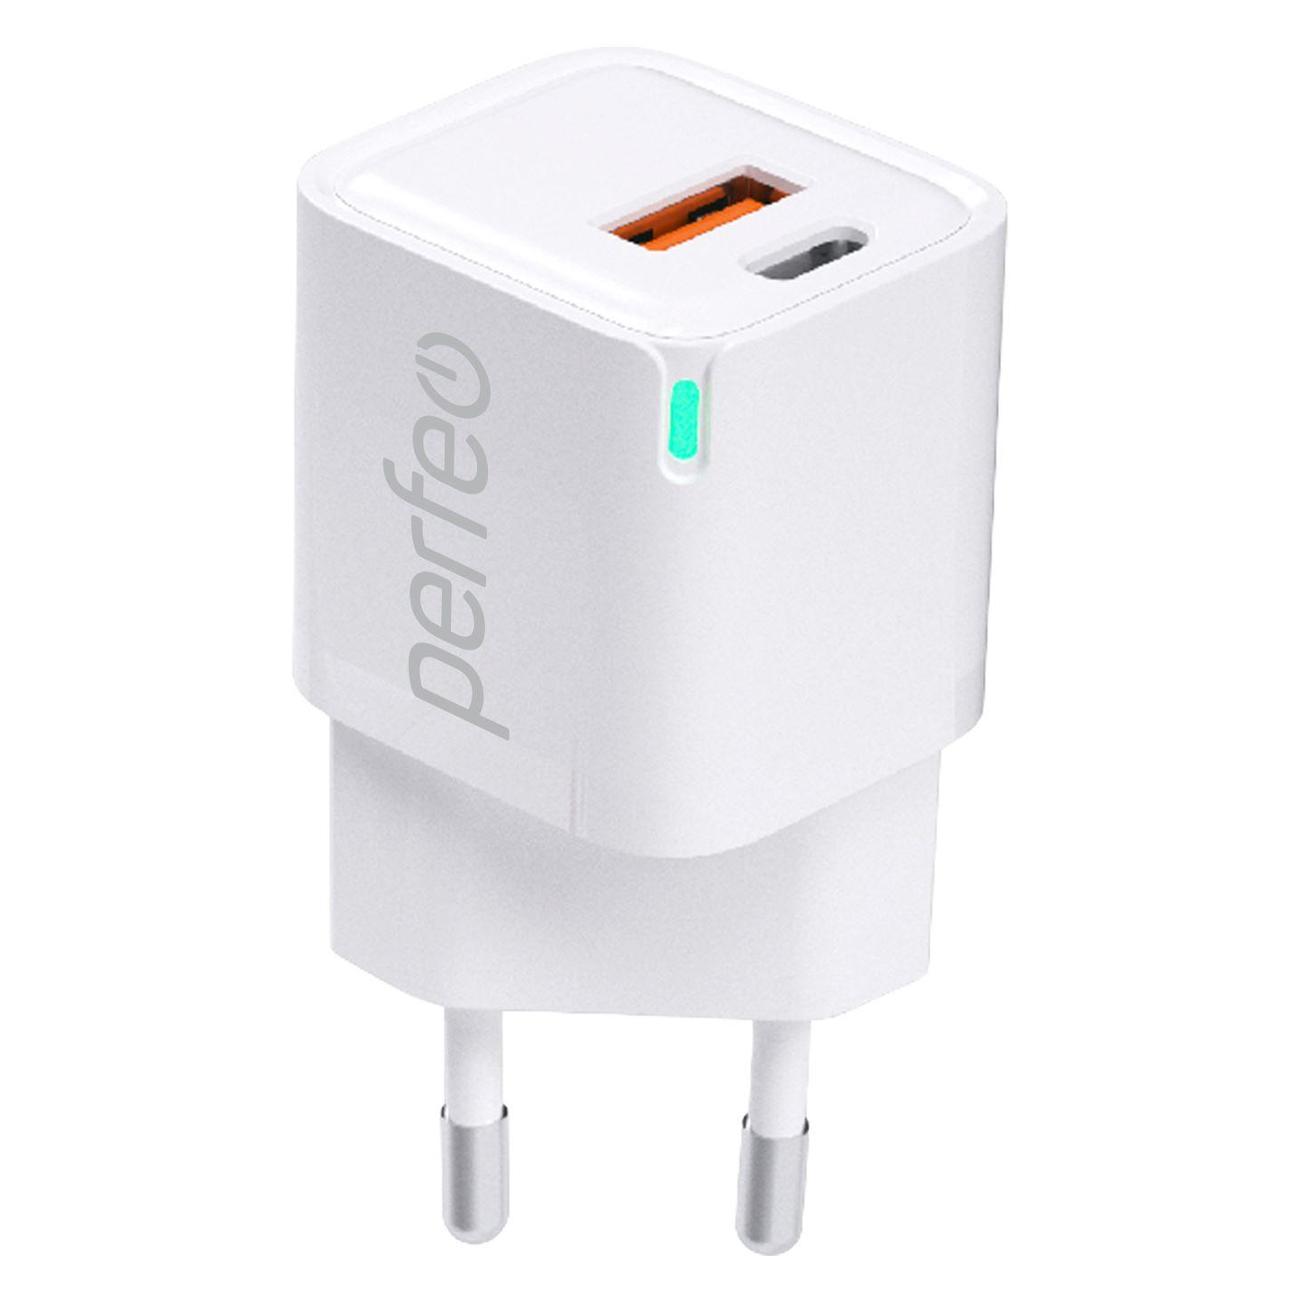 Сетевое зарядное устройство Perfeo I4652 20 Вт, USB, EU, USB type-C, Quick Charge, PD, белый (I4652)